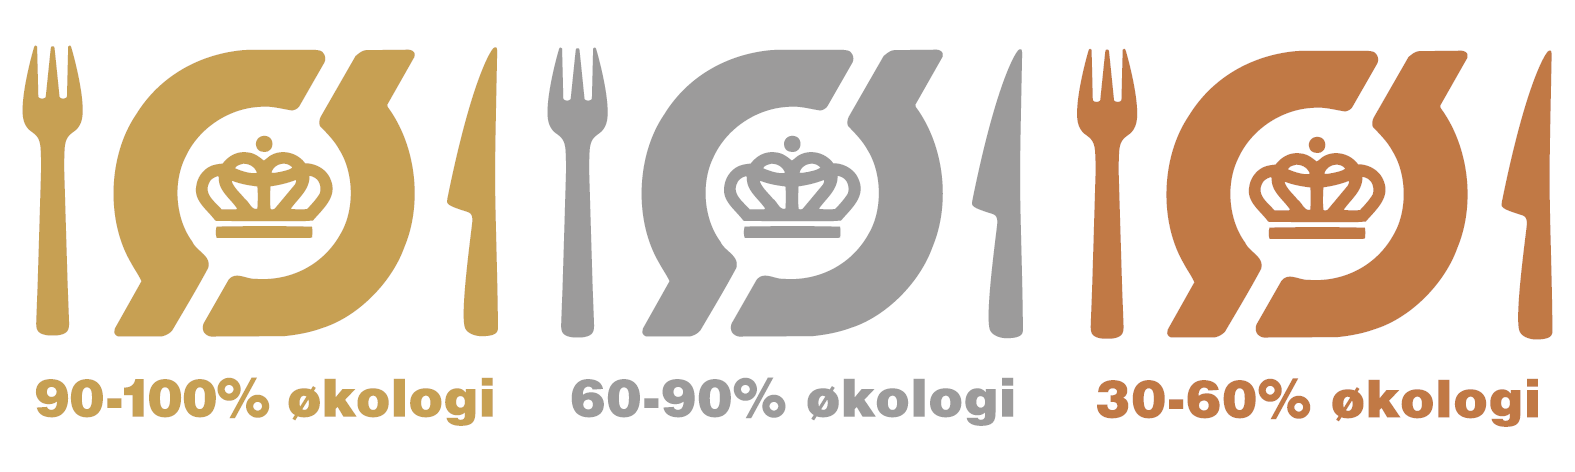 Organic Cuisine Label Denmark